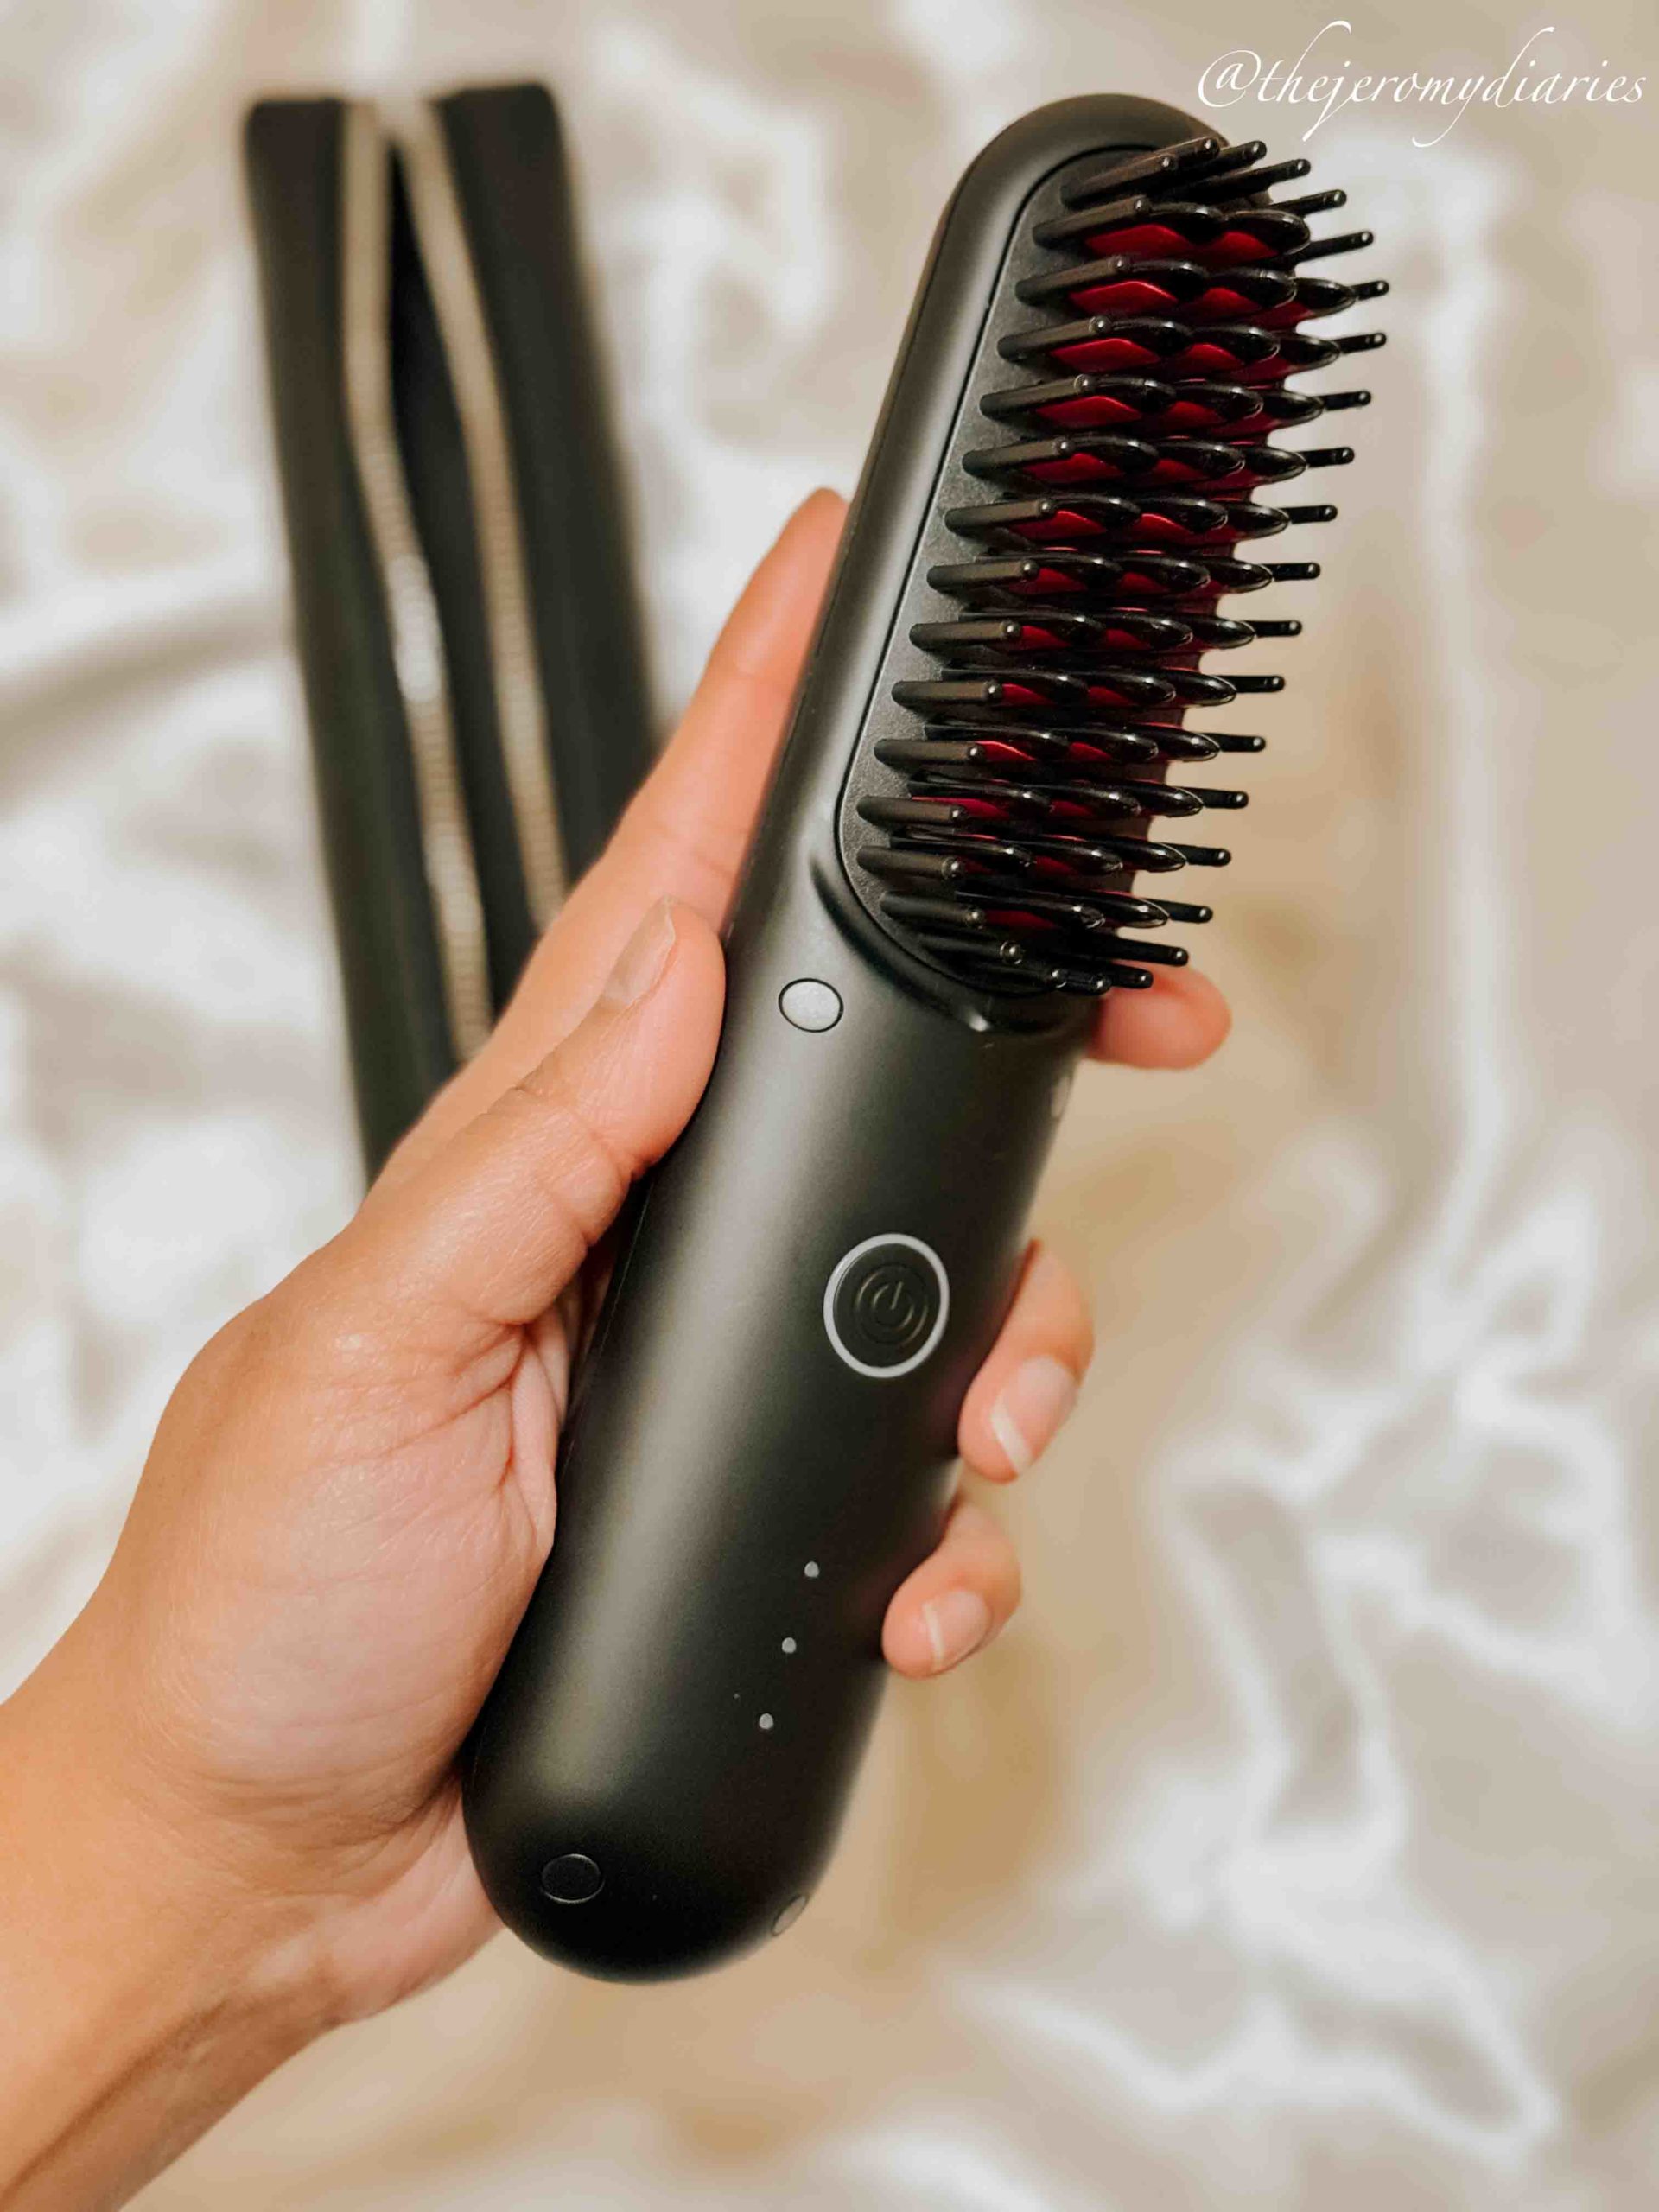 Tymo Porta Hair Straightener Brush Review - The Jeromy Diaries